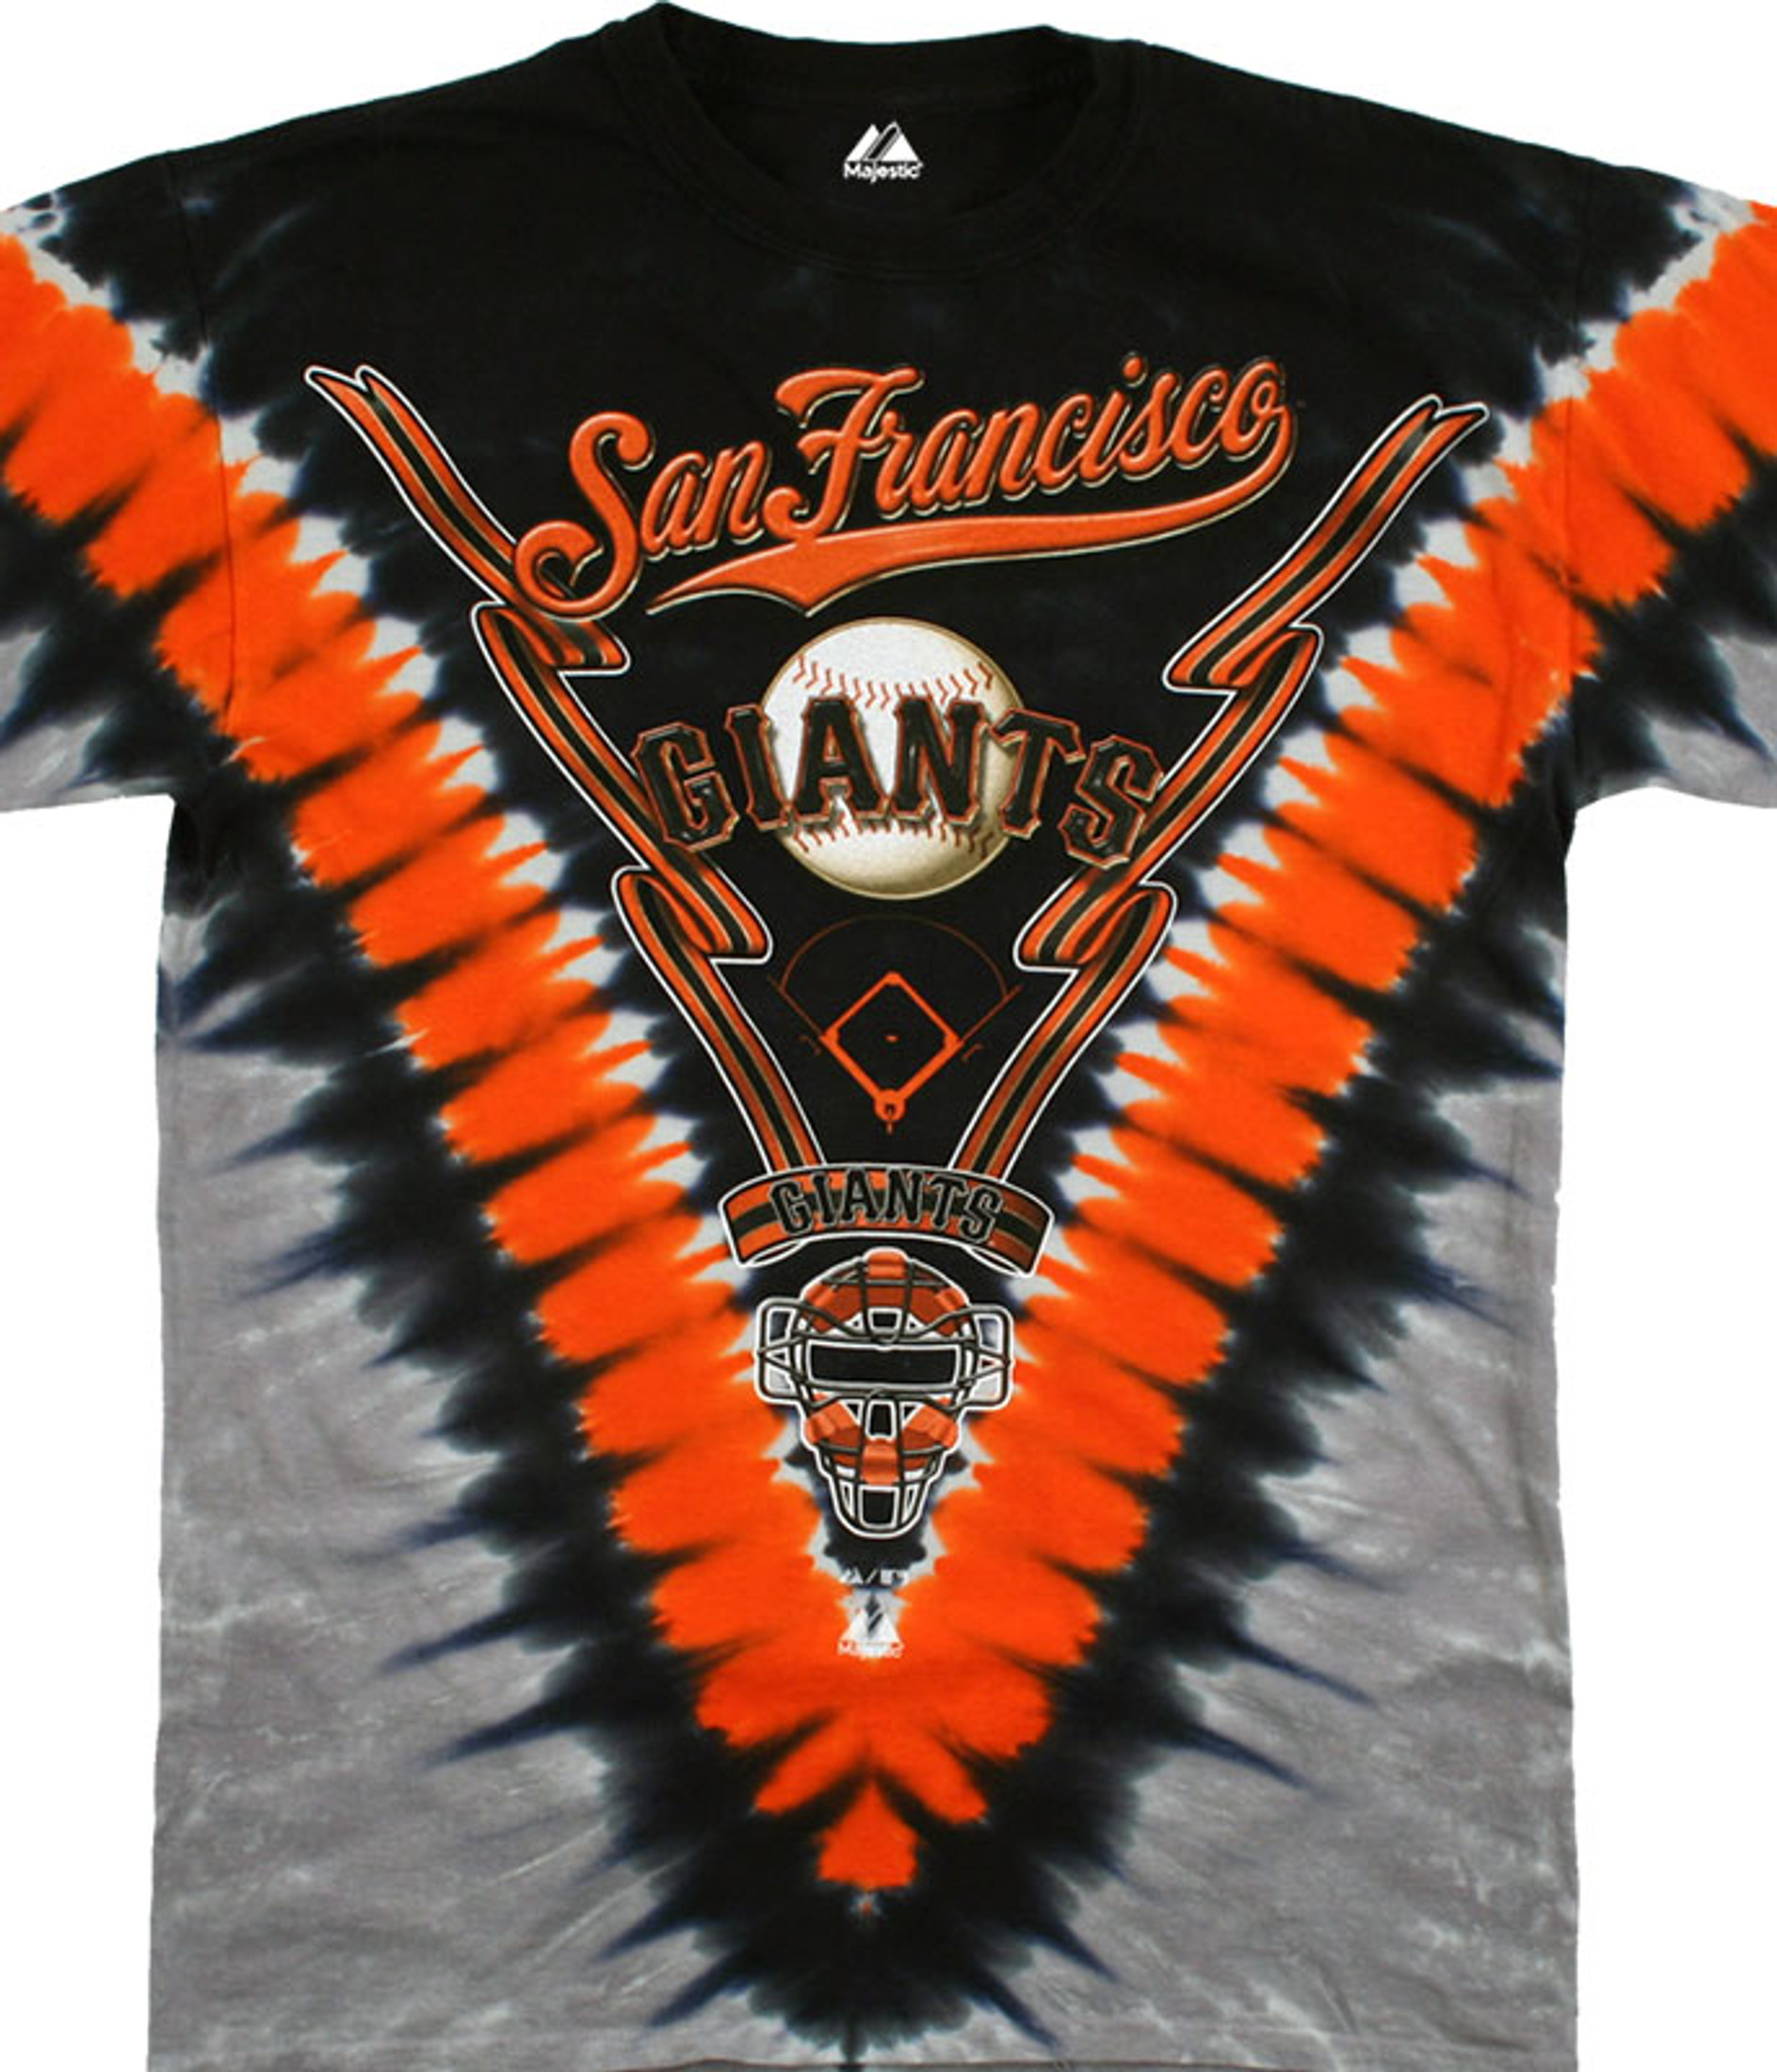 Vintage Mlb San Francisco Tie Dye Giants T-shirt XL Black Orange